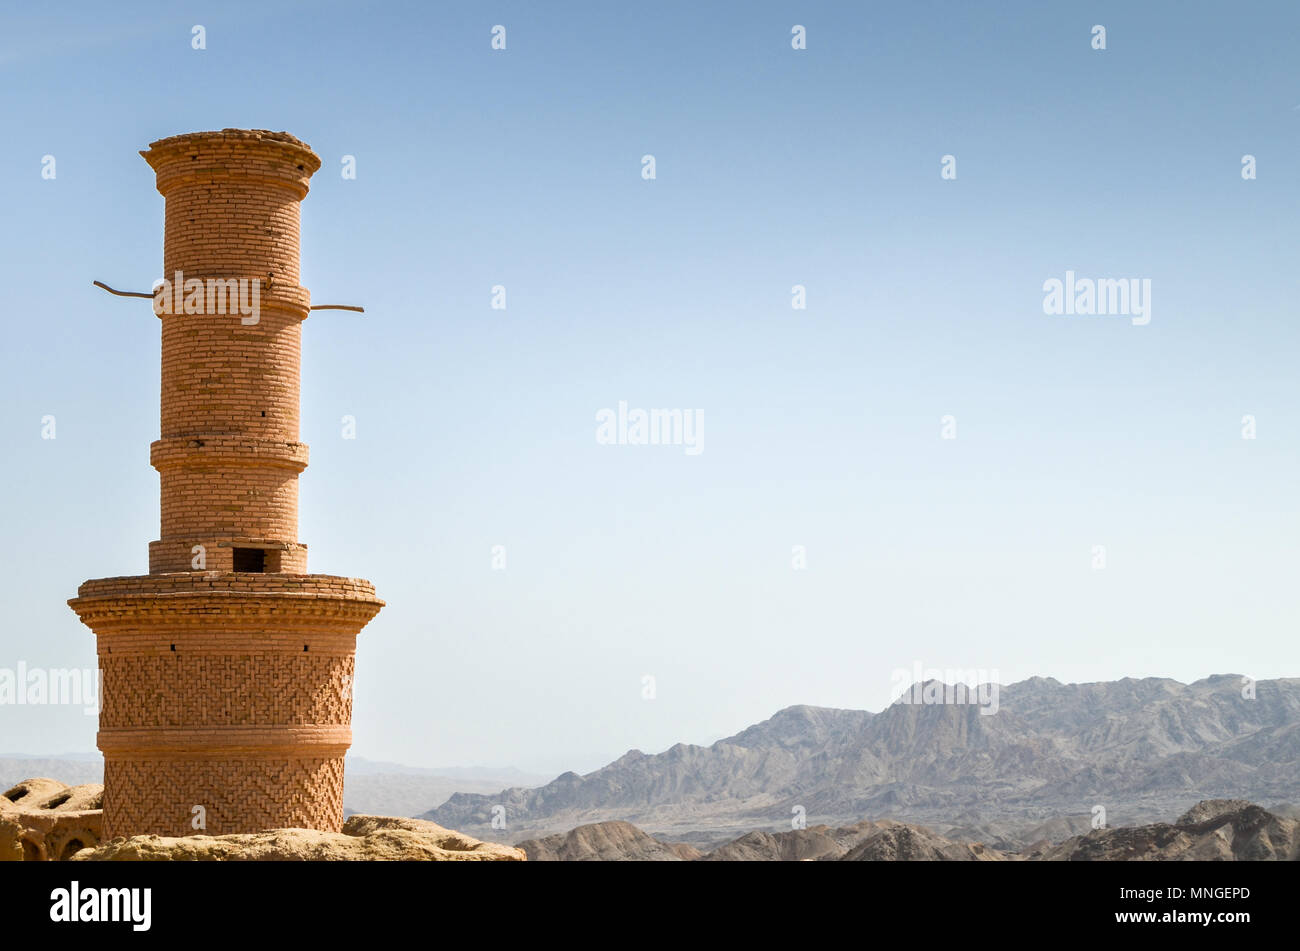 Windcatcher Towers è un tradizionale Persiano elemento architettonico per creare una ventilazione naturale negli edifici, città vecchia Yazd Iran. Foto Stock